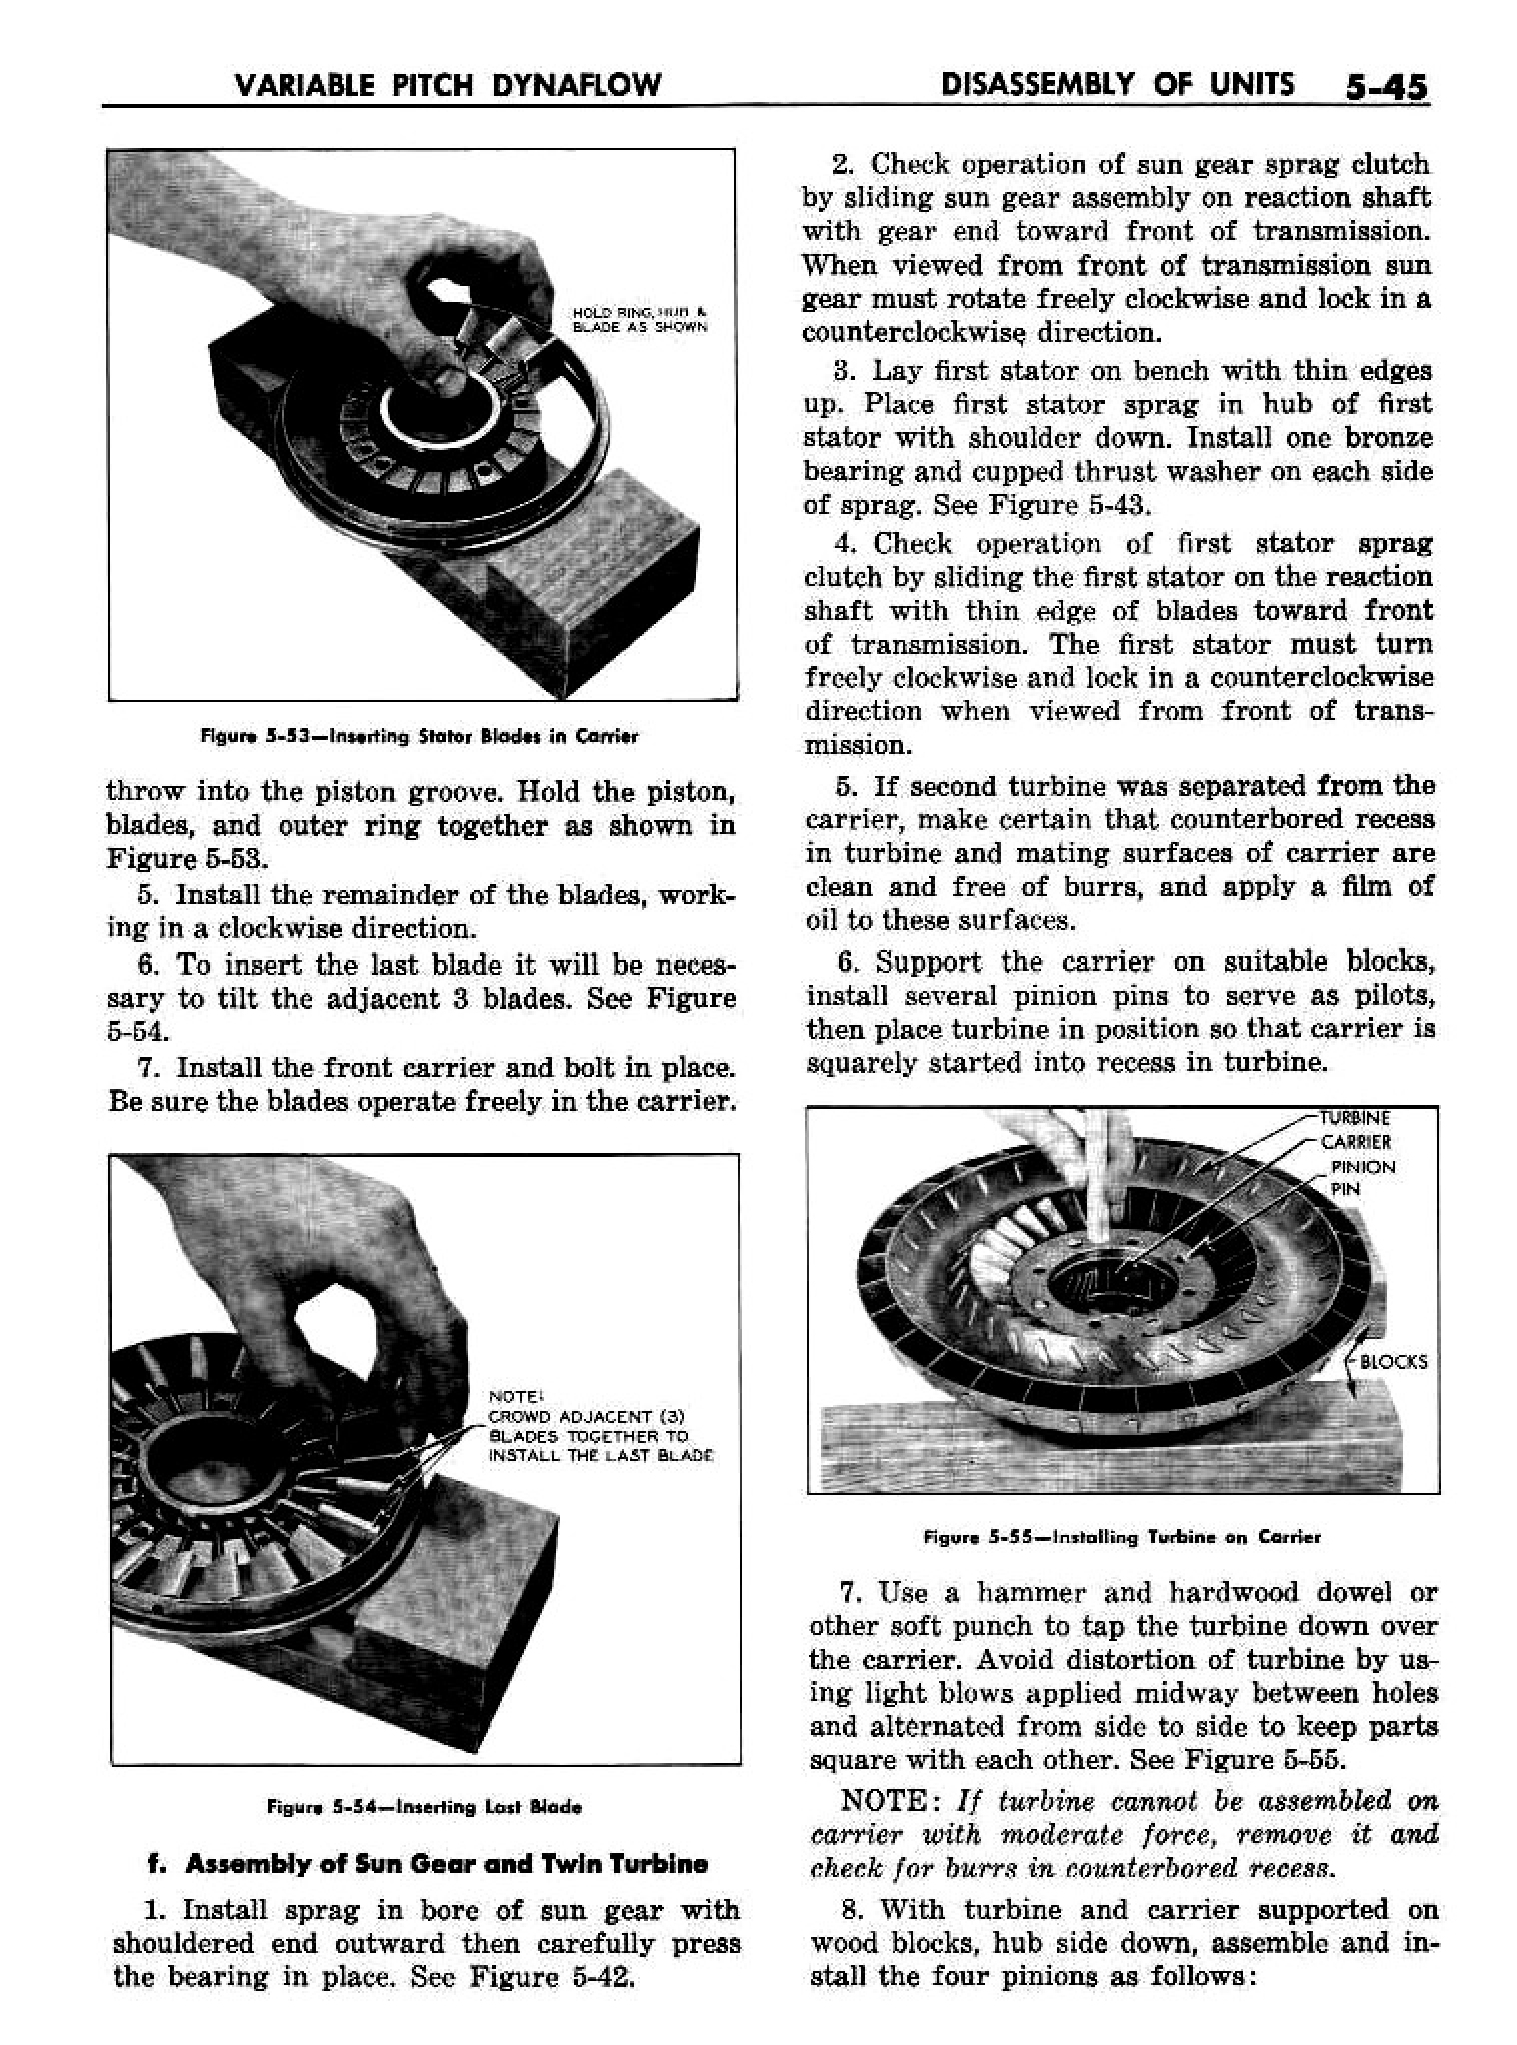 n_06 1958 Buick Shop Manual - Dynaflow_45.jpg